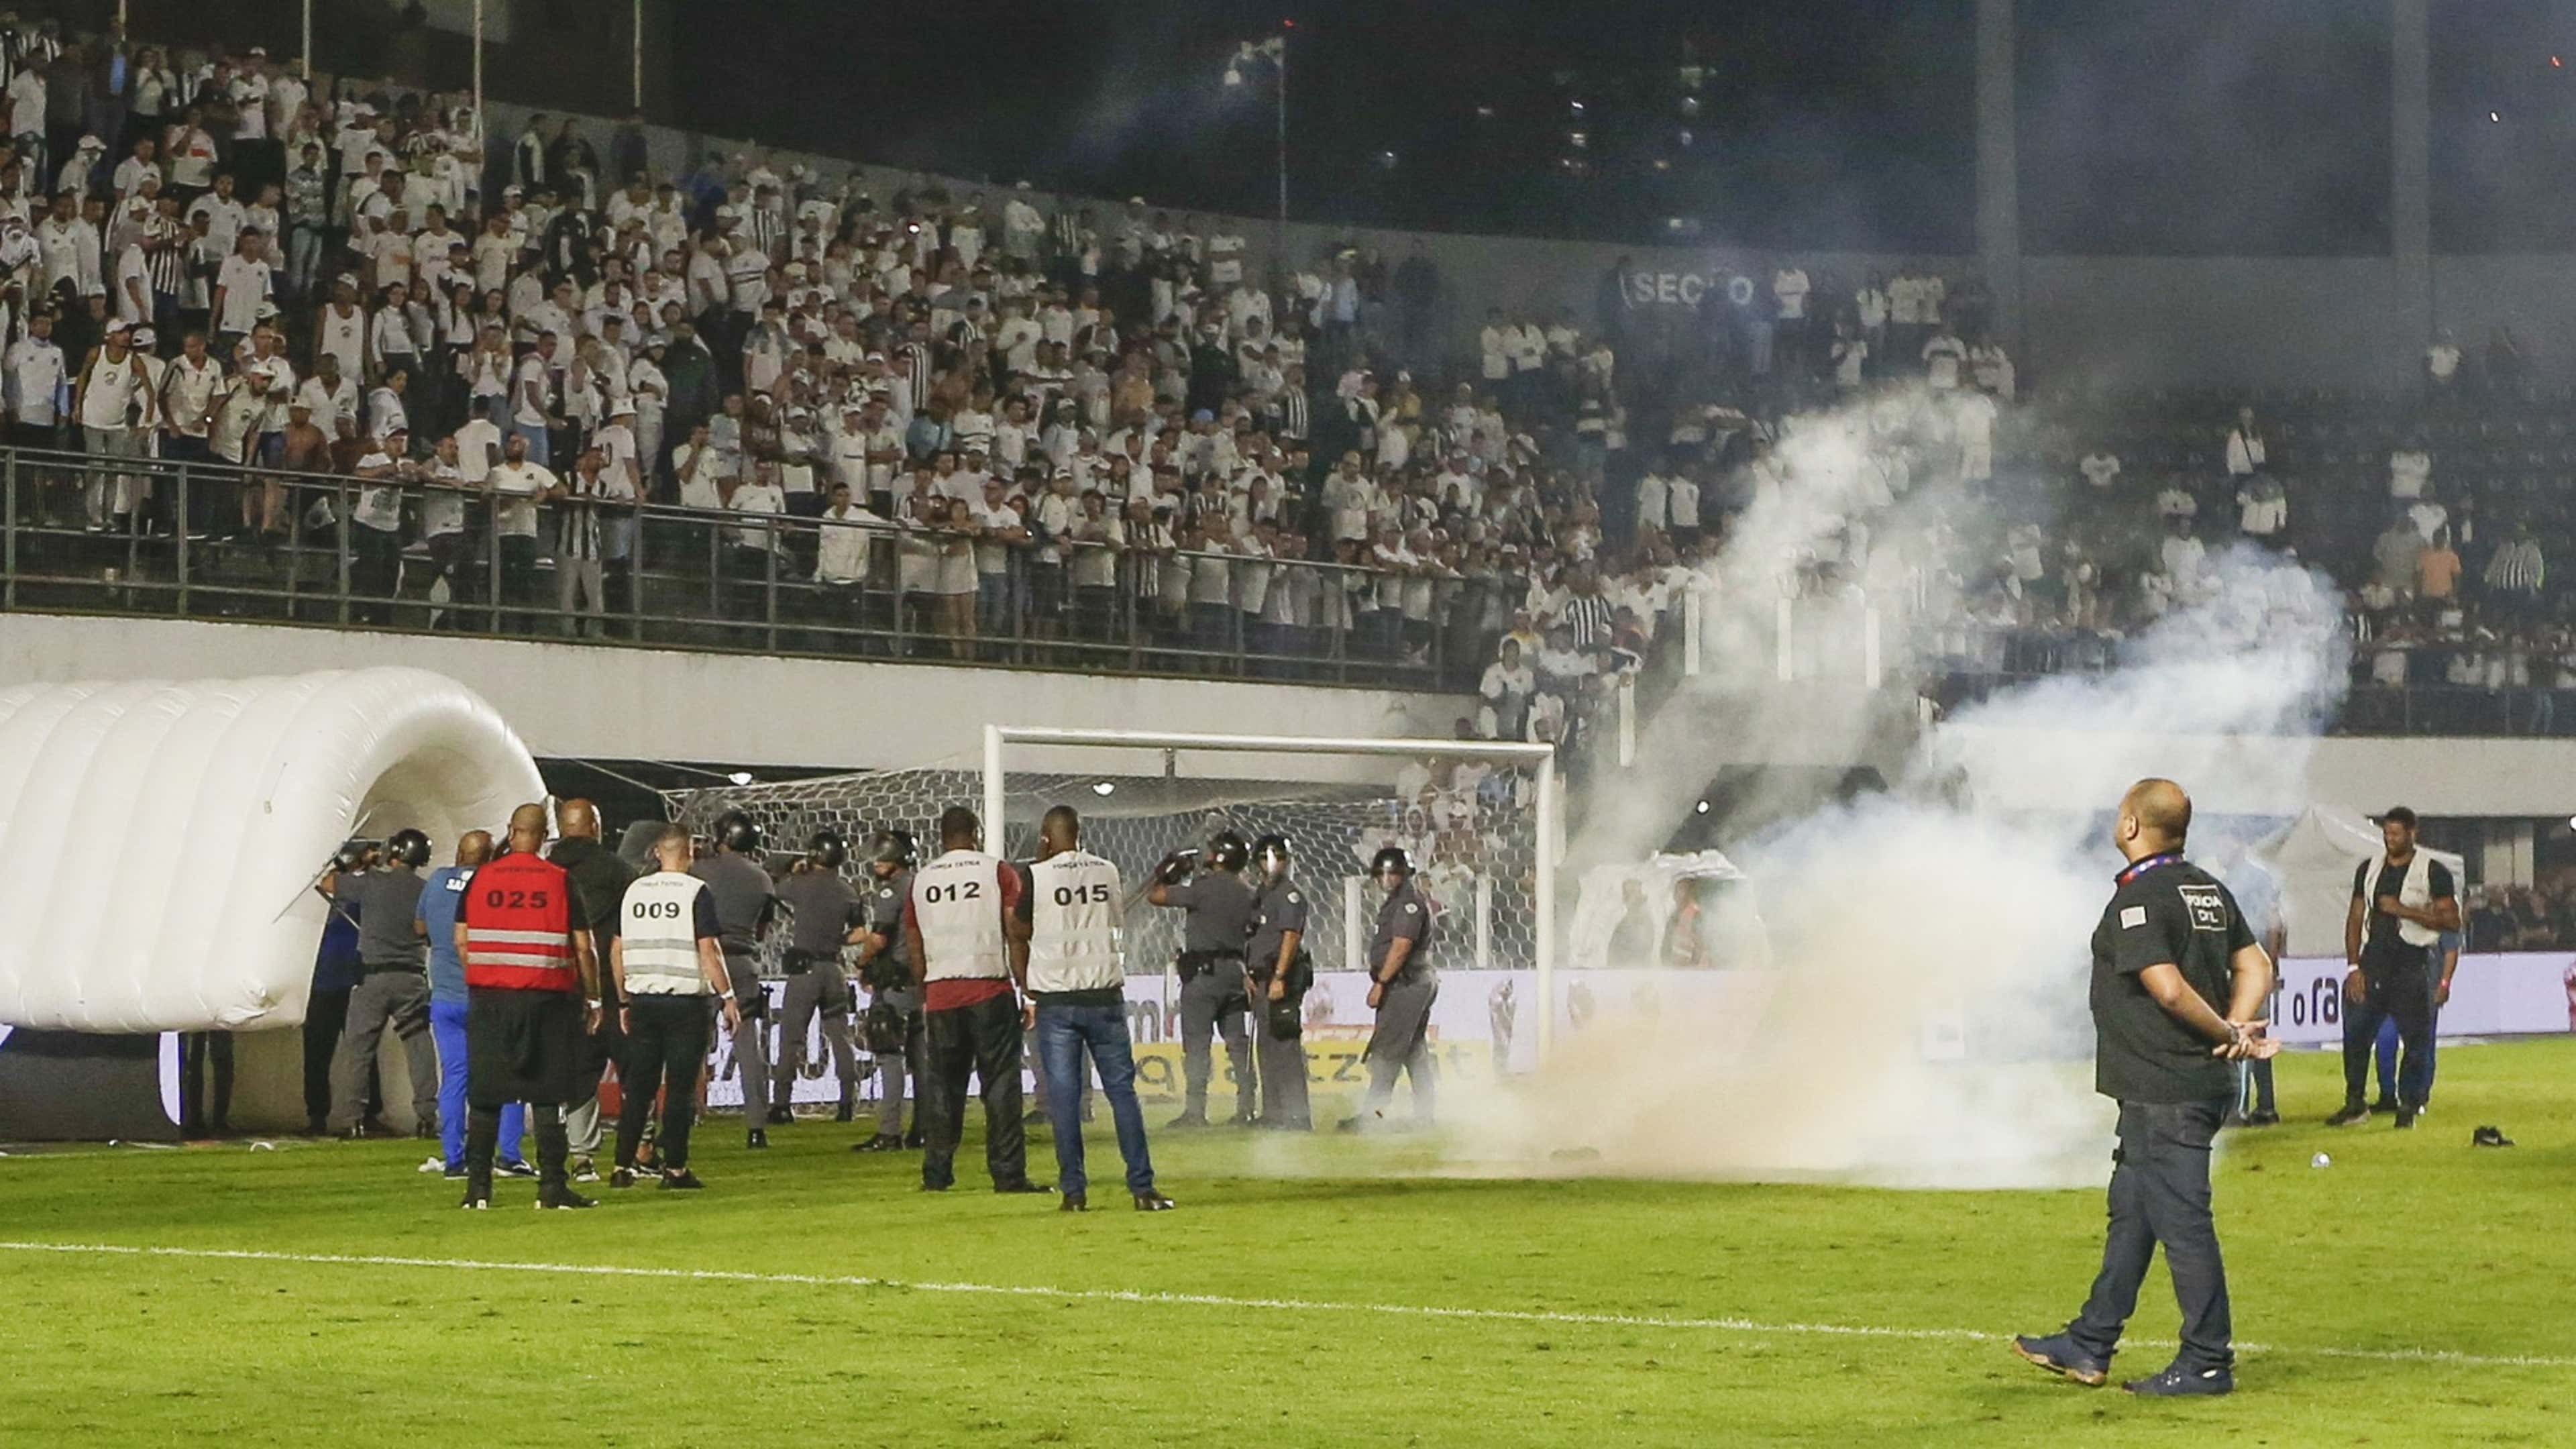 Santos perde do Corinthians, torcida se revolta e jogo termina